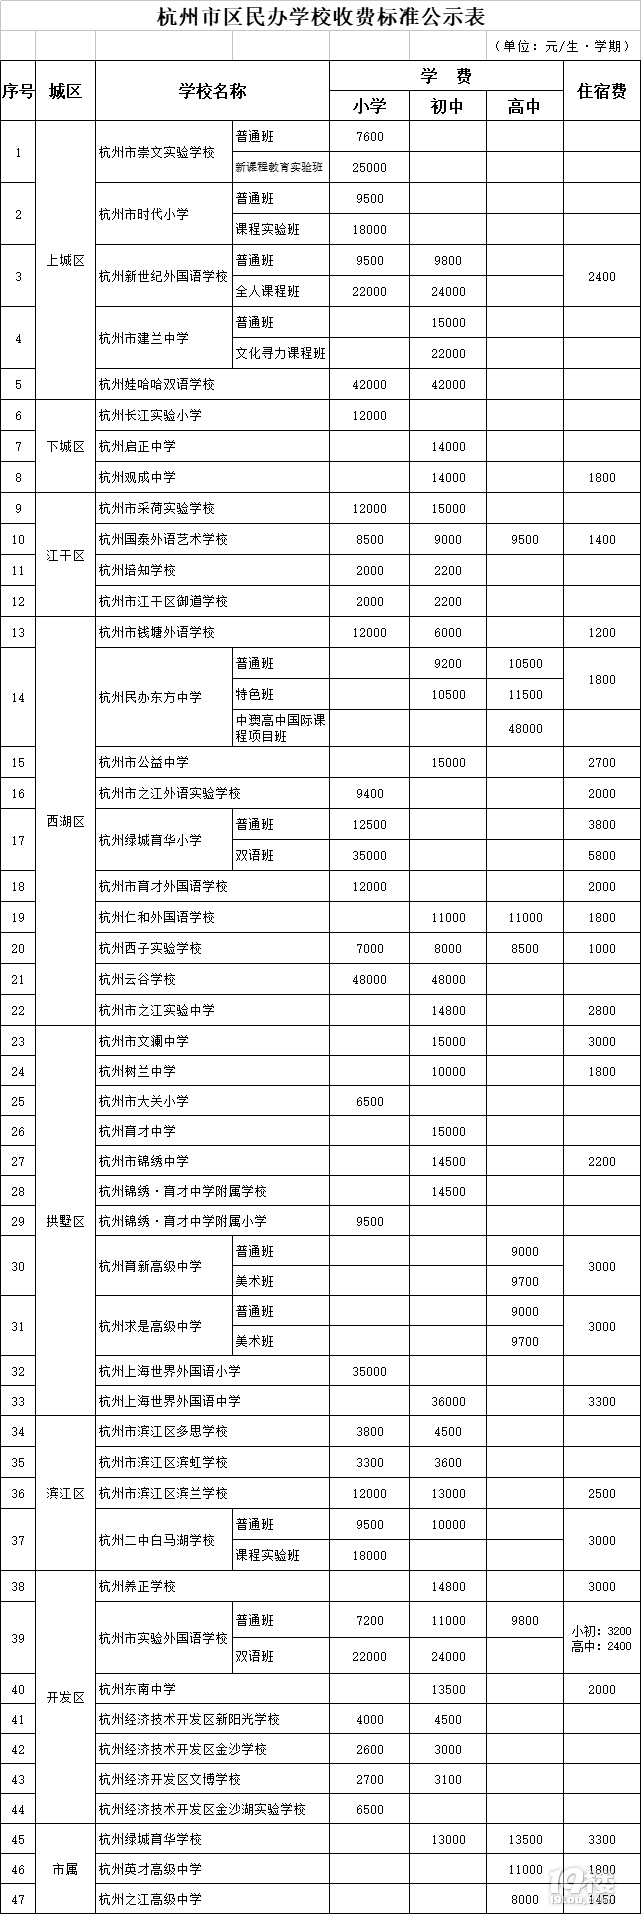 25000飙升到40000！杭州民办学费涨价潮开启！